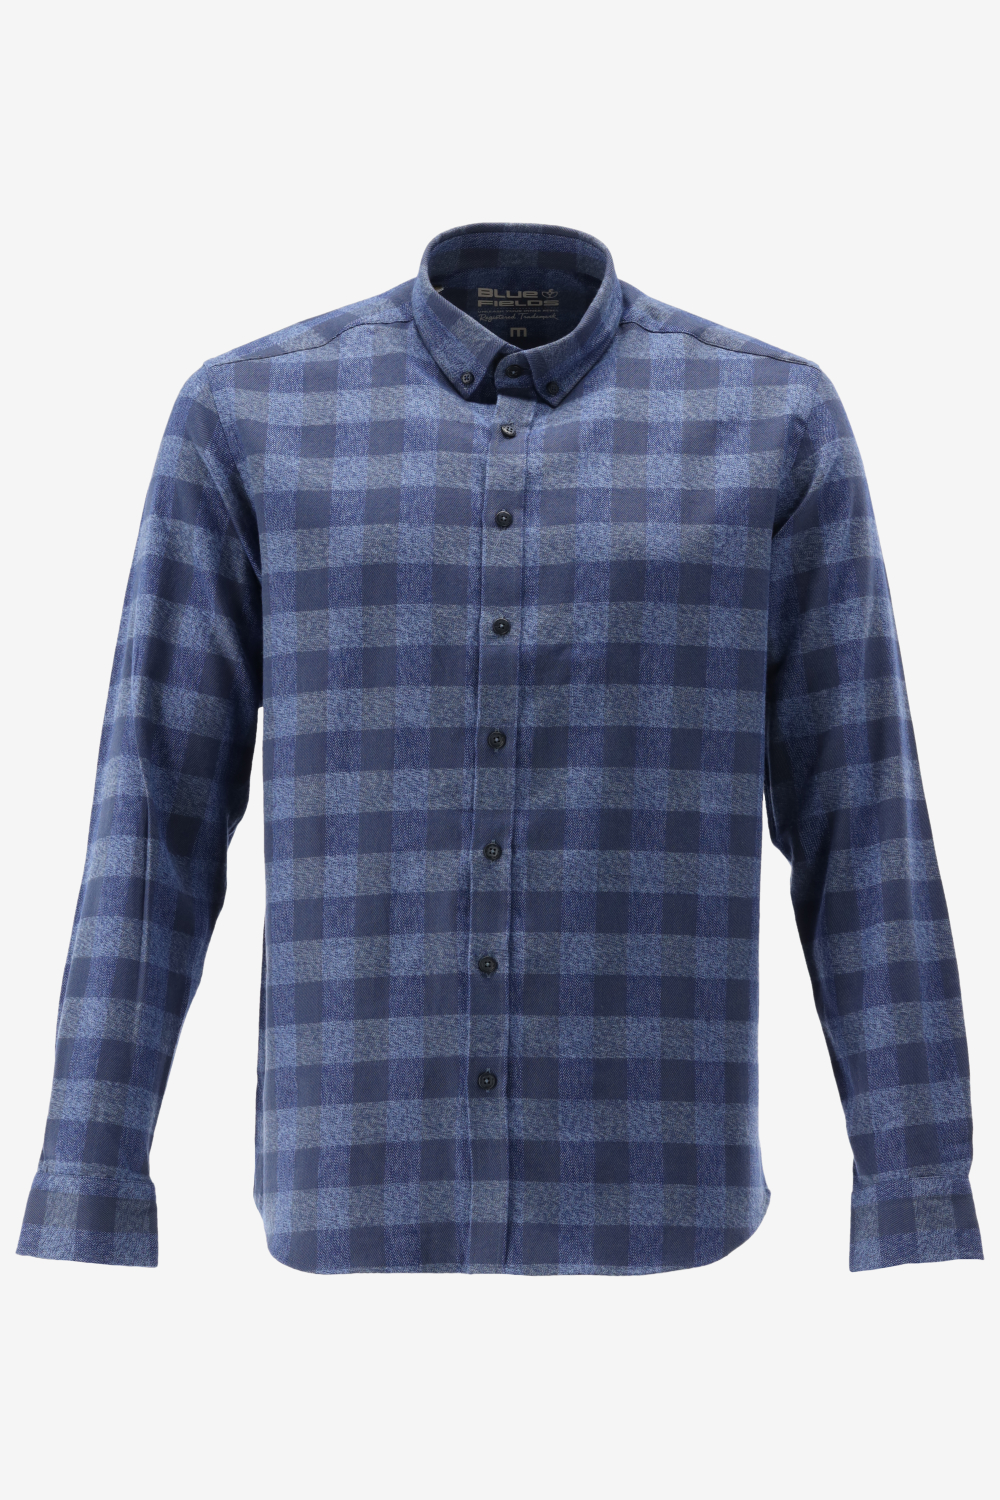 BlueFields Overhemd Shirt Ls Checked 21542018 5957 Mannen Maat - XXL